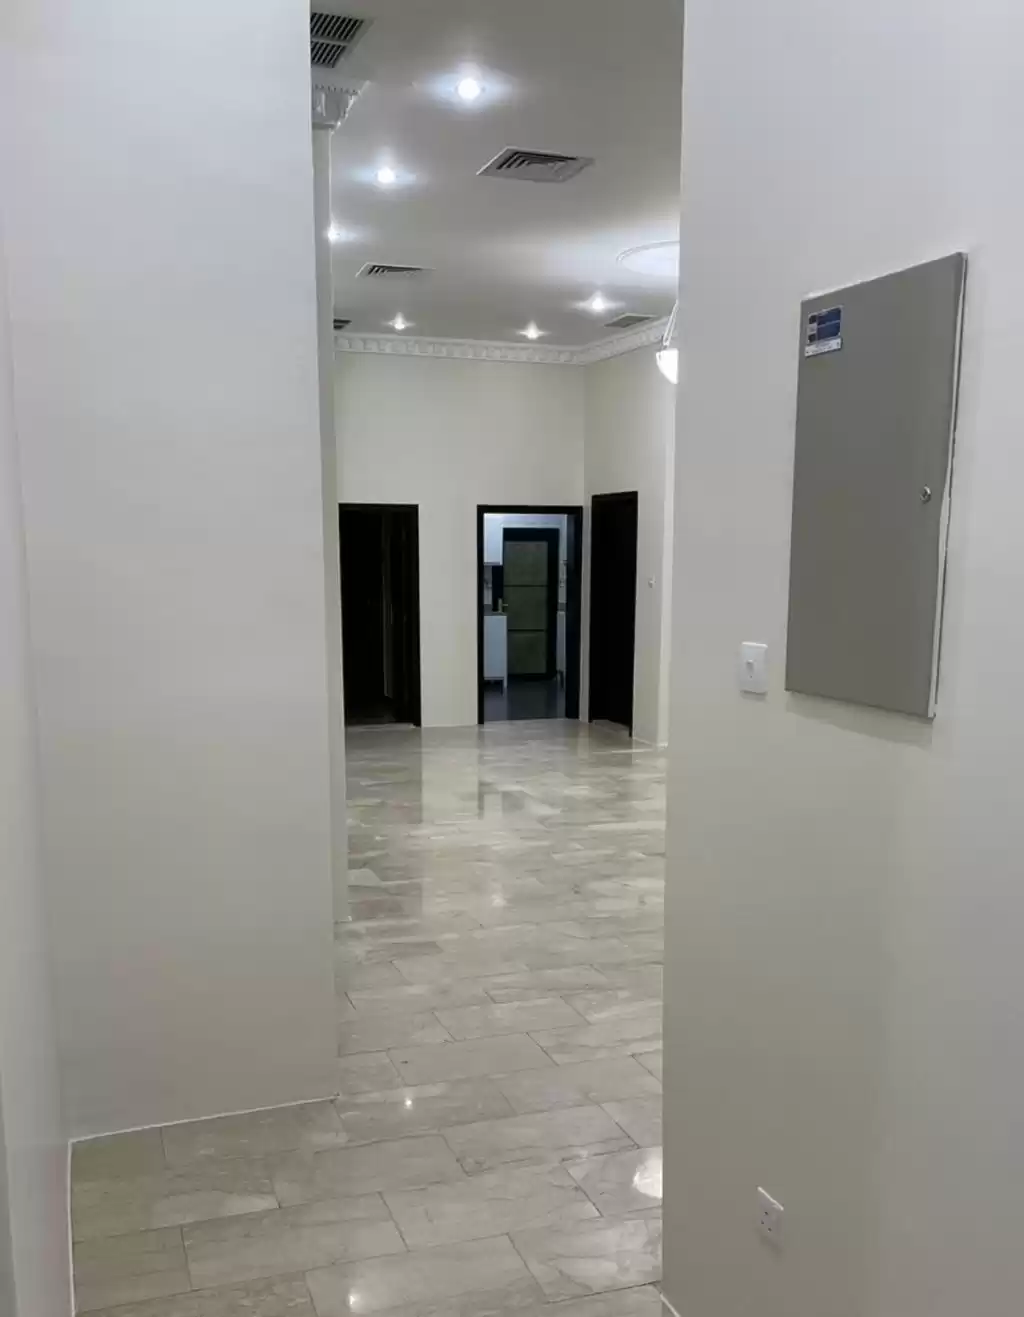 Résidentiel Propriété prête 3 chambres U / f Appartement  a louer au Koweit #24439 - 1  image 